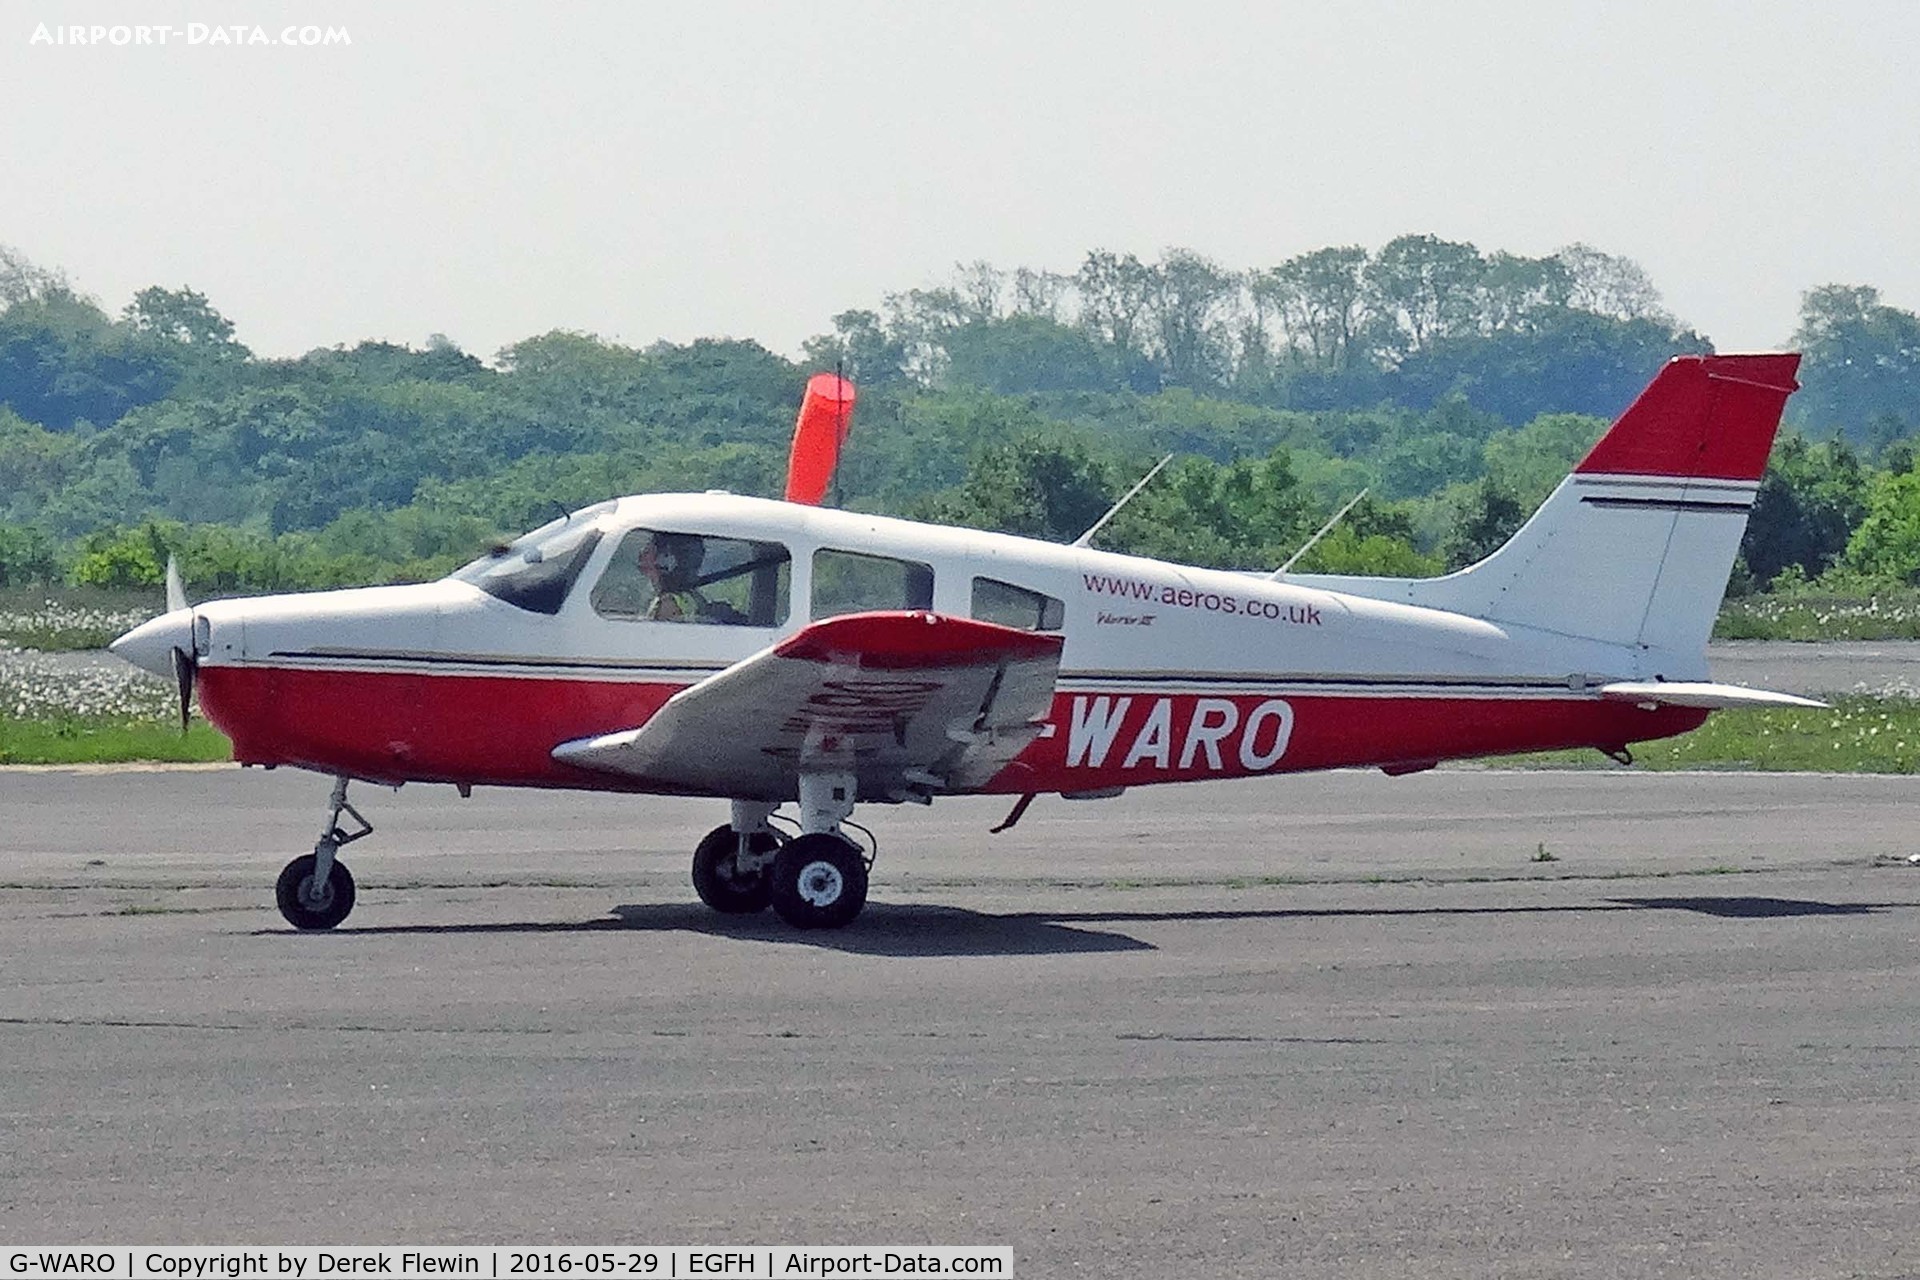 G-WARO, 1997 Piper PA-28-161 Cherokee Warrior III C/N 28-42015, Cherokee Warrior III, Aeros Cardiff  based, previously N9246, G-WARO, EC-HVT, seen taxxing in.